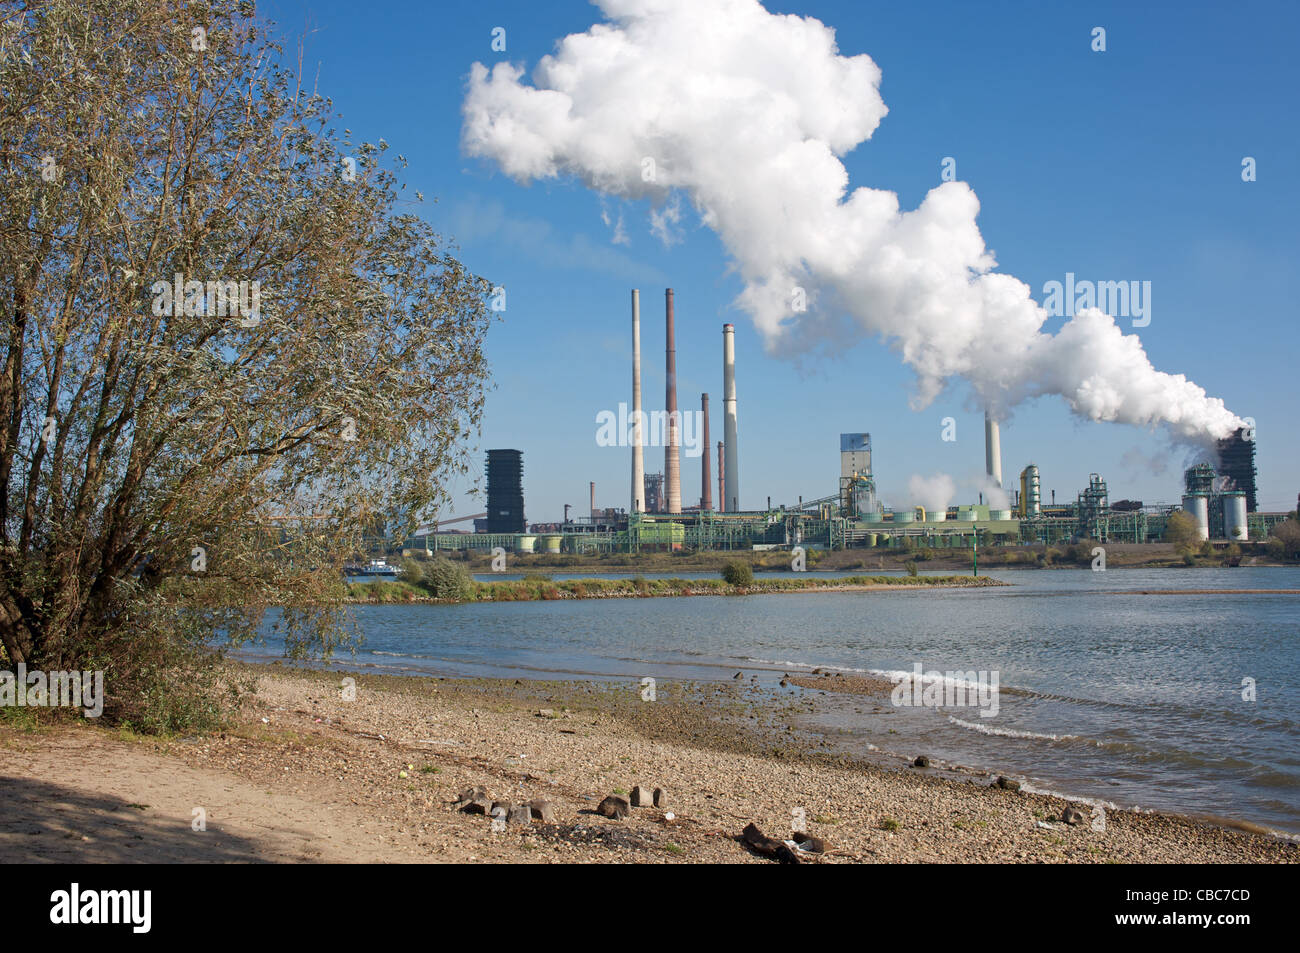 ThyssenKrupp smelting works, Duisburg, North Rhine-Westphalia, Germany. Stock Photo